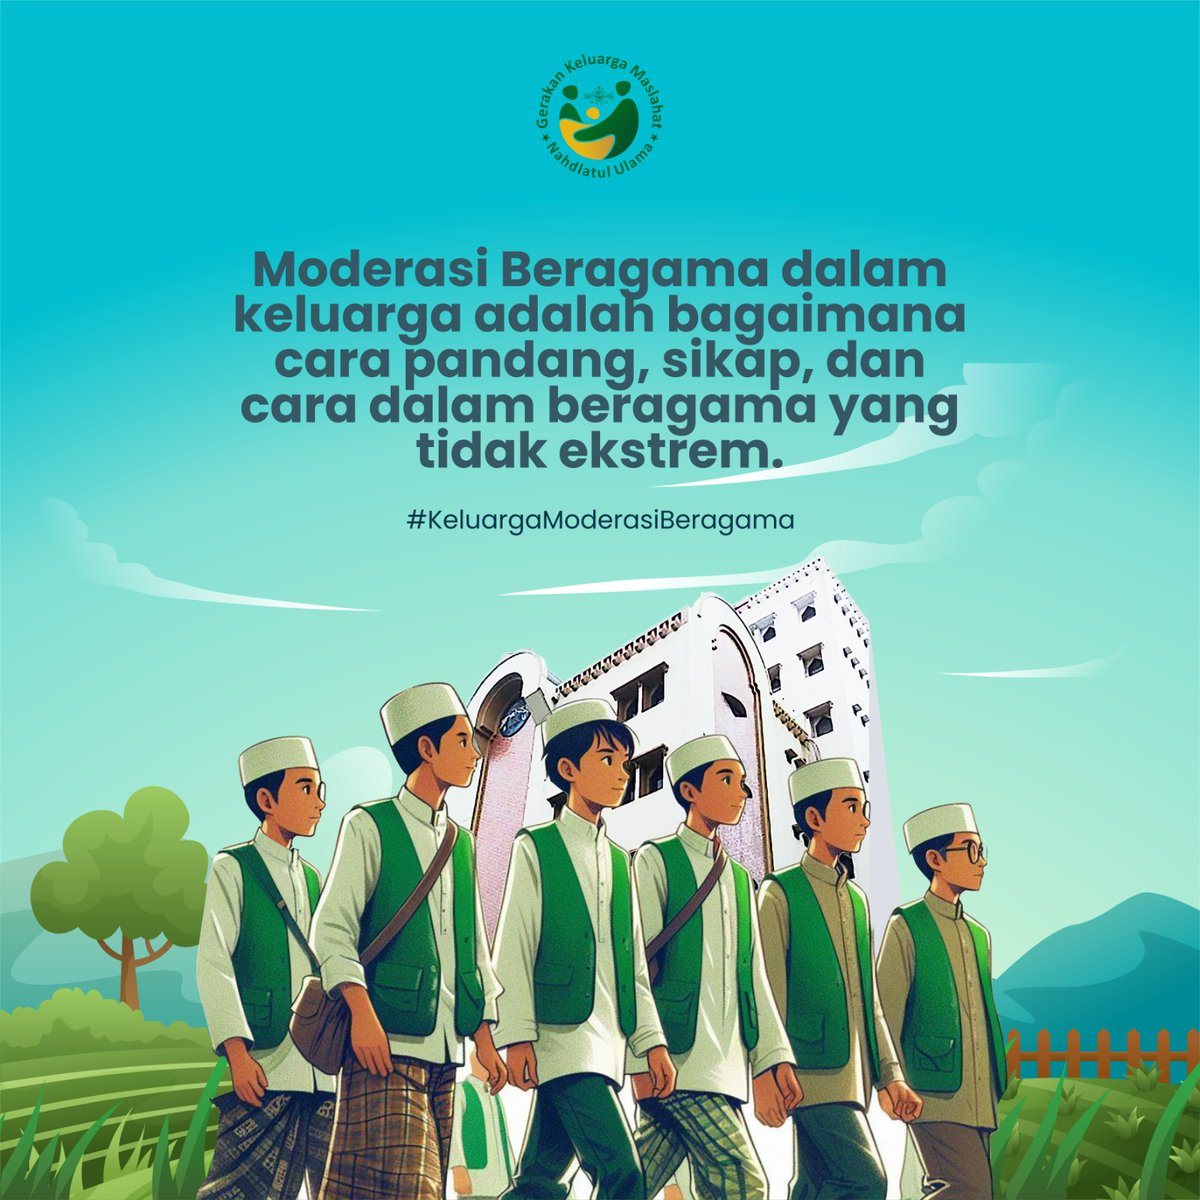 Bimbingan keluarga Sakinah GKM NU mencegah stunting kick off sudah dilaksanakan di Jawa Barat dan Jawa Timur. Jawa Timur sudah bergerak pemasangan stiker oleh para pendamping desa. Semoga langkah awal ini menjadi awal membangun bangsa yg berdaya. #KeluargaModerasiBeragama